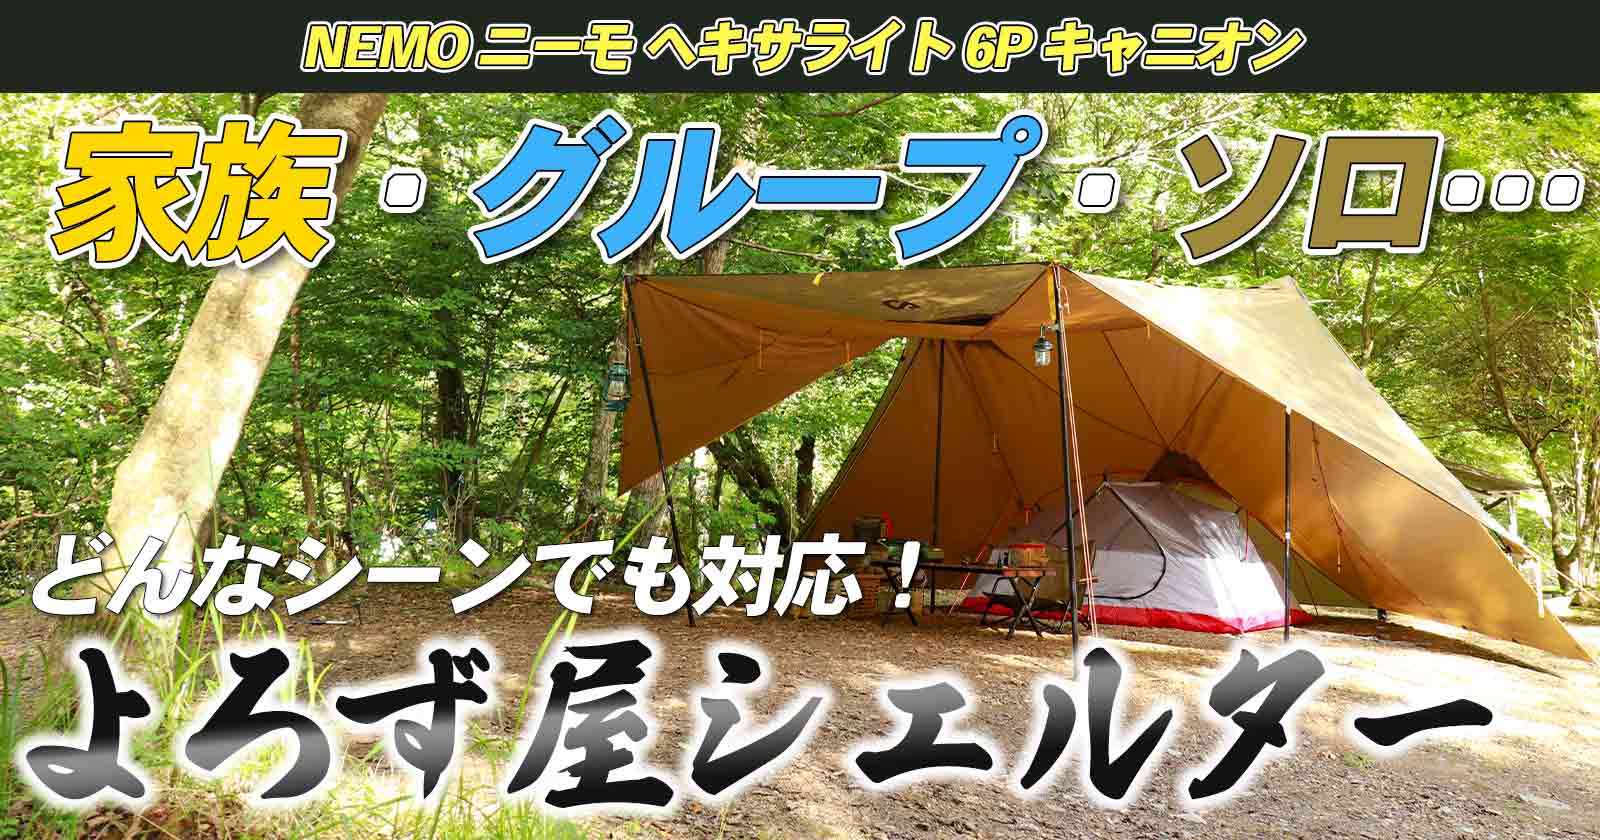 NEMO ニーモ ヘキサライト6P キャニオン ポールセット - テント/タープ